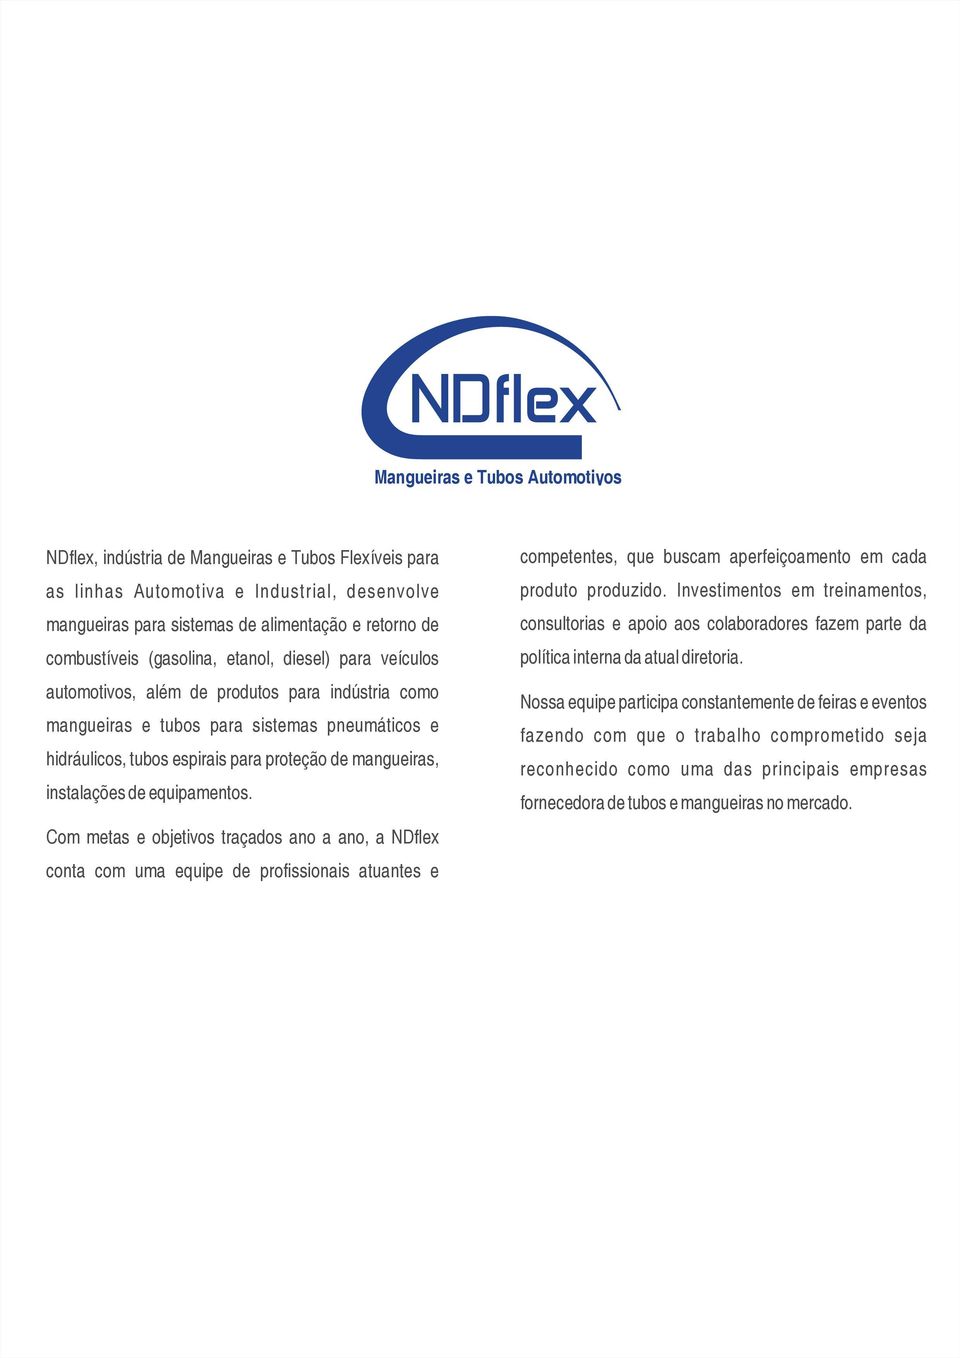 instalações de equipamentos. Com metas e objetivos traçados ano a ano, a NDflex conta com uma equipe de profissionais atuantes e competentes, que buscam aperfeiçoamento em cada produto produzido.